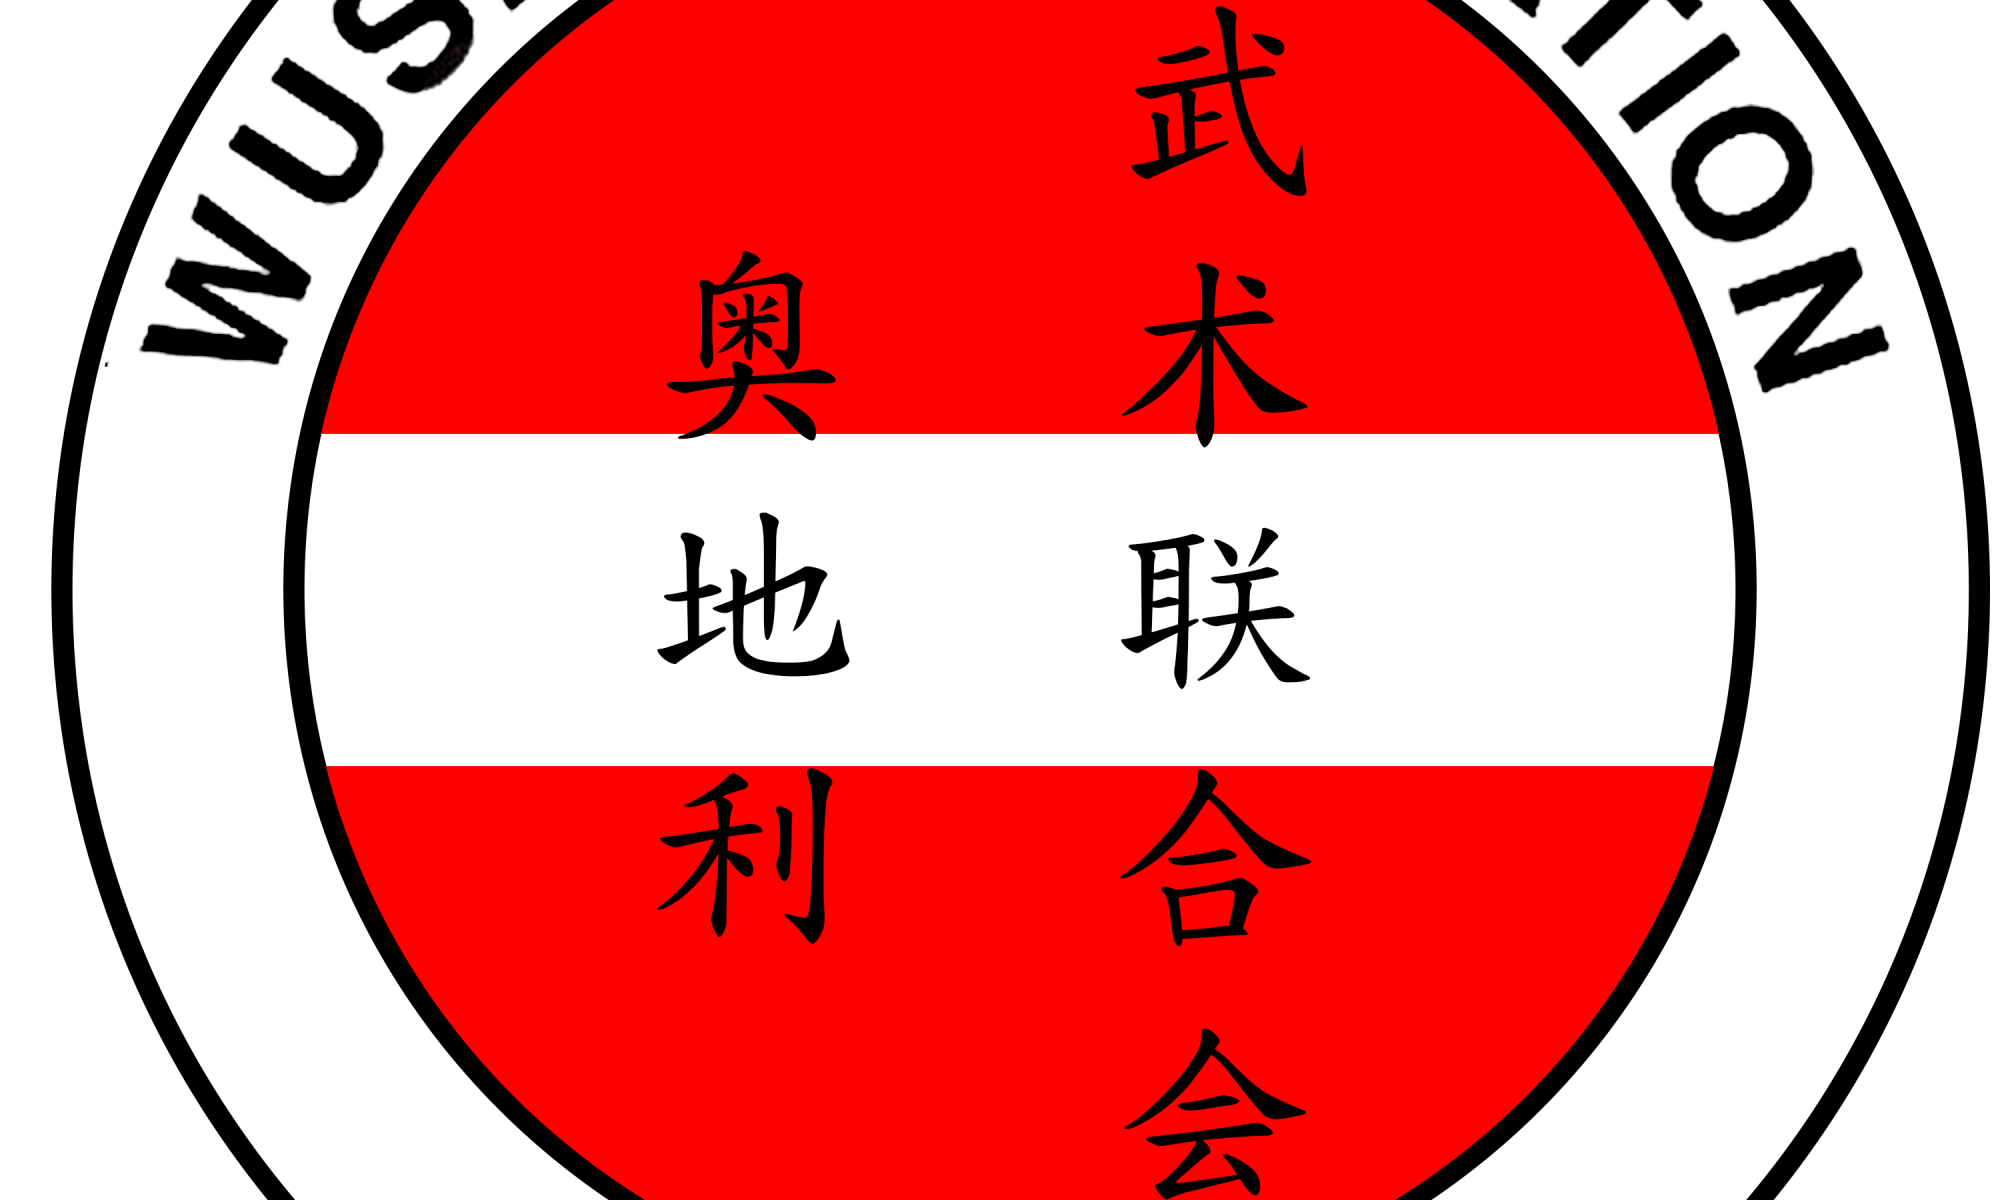 Austrian Wushu Federation